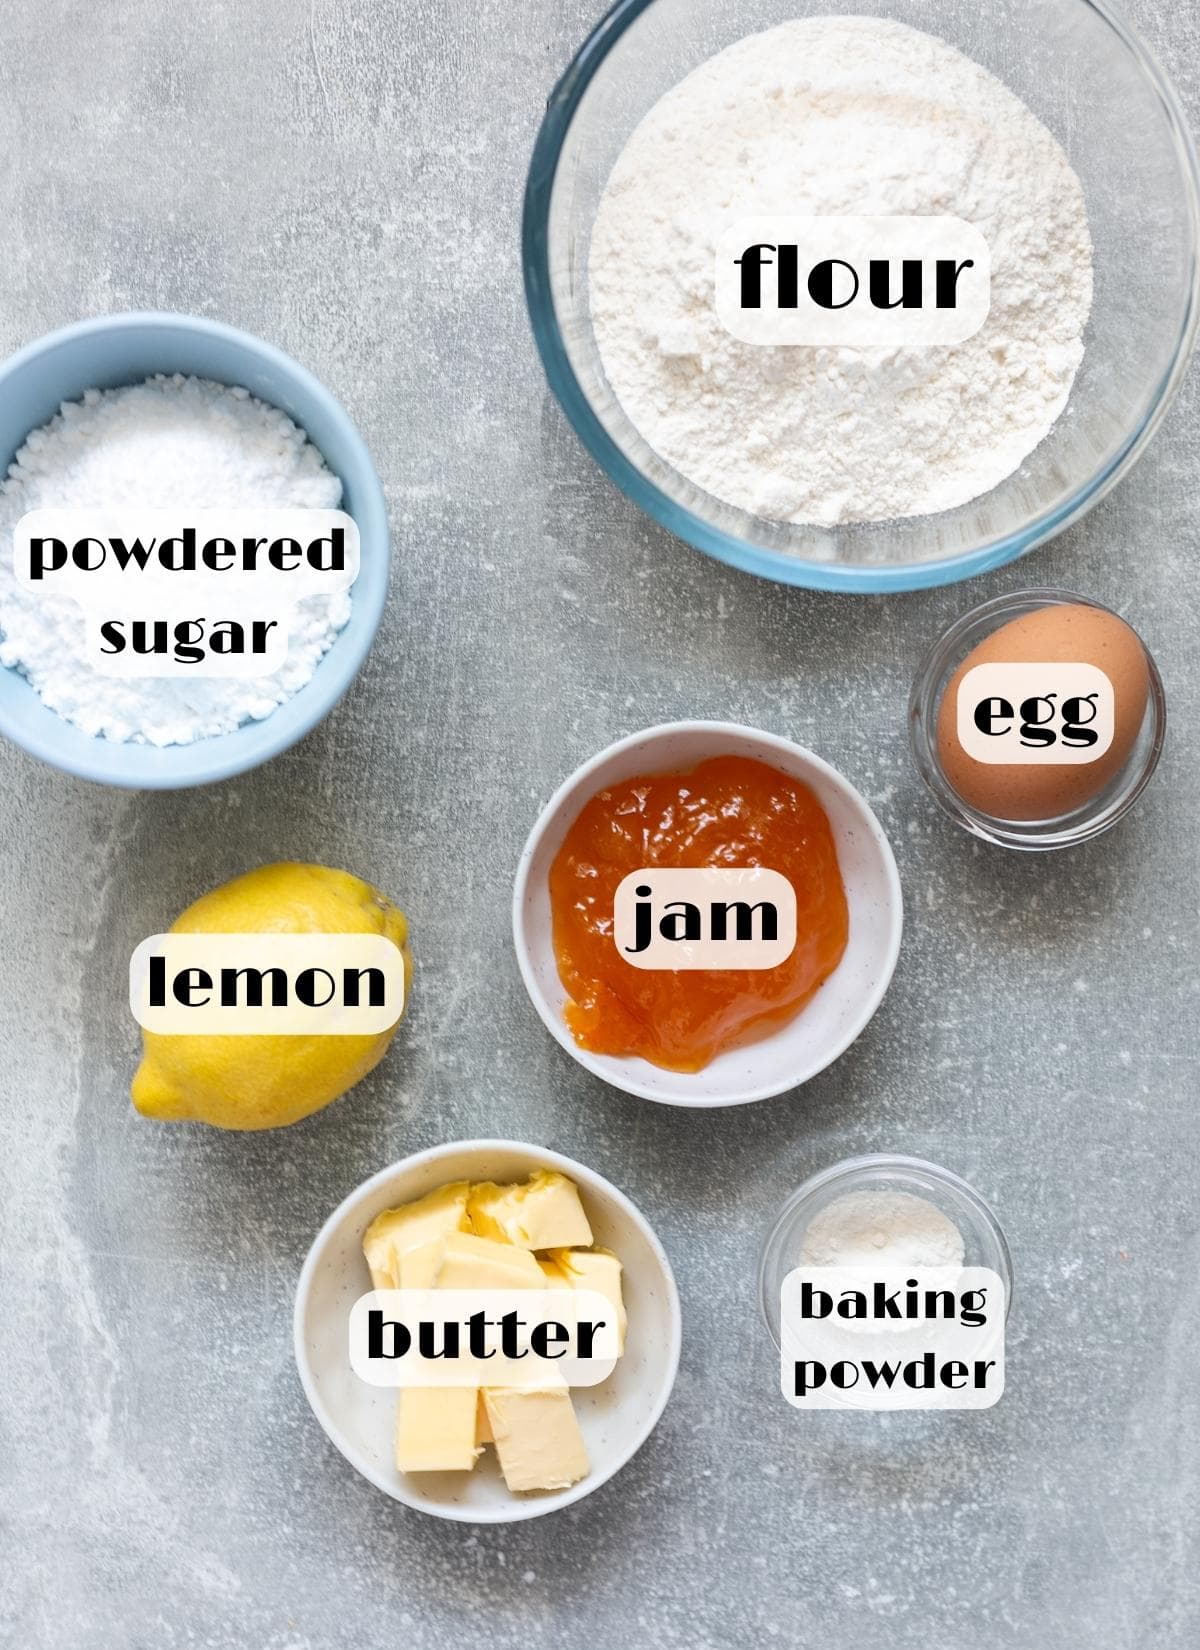 pizzicati cookies ingredients: butter, flour, lemon, egg, baking powder, powdered sugar, jam.